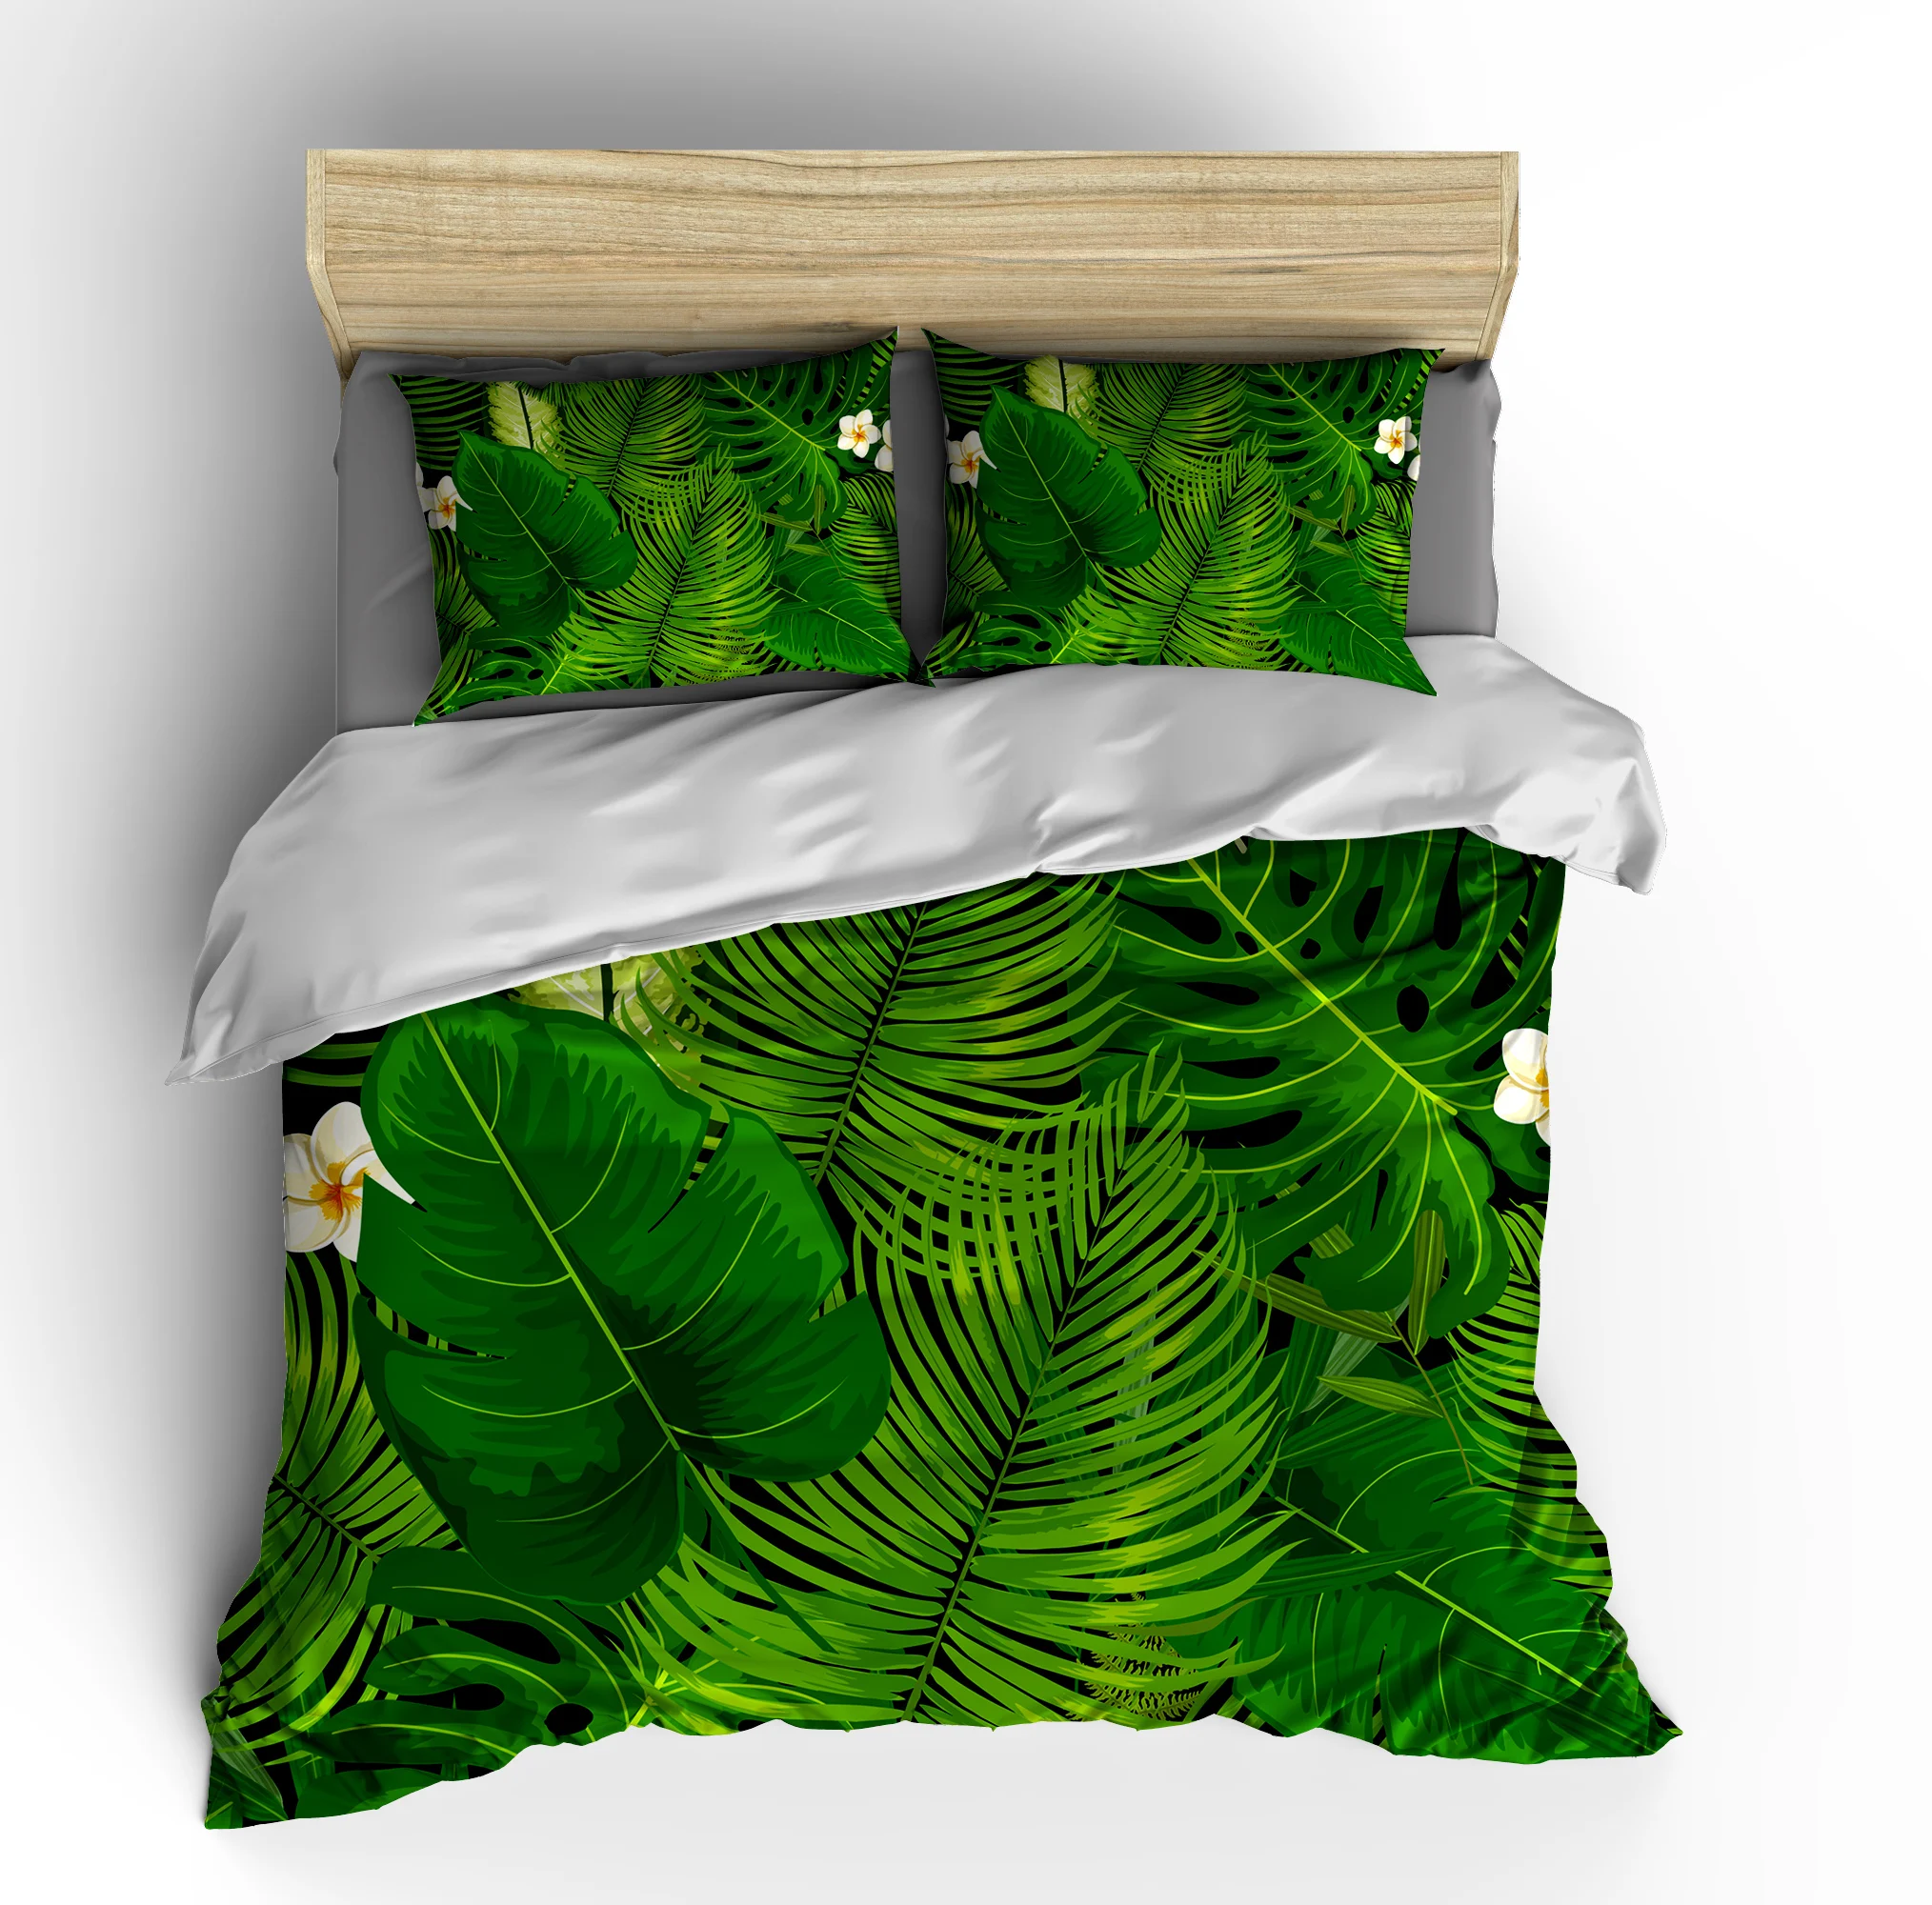 3d Bedding Sets Palm Leaf Picture Duvet Cover Set Four Seasons